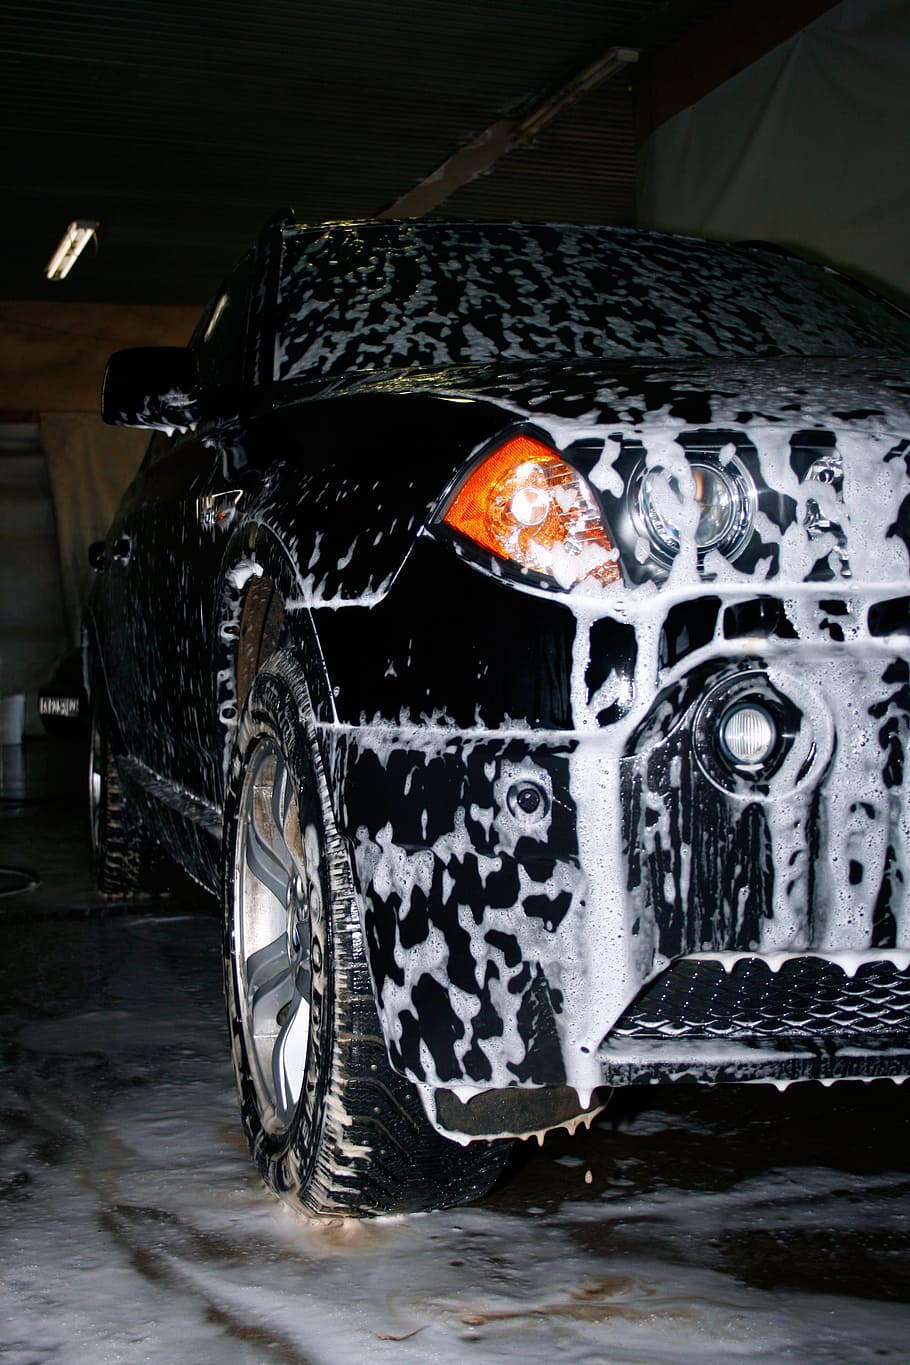 Car Wash Wallpaper Hd